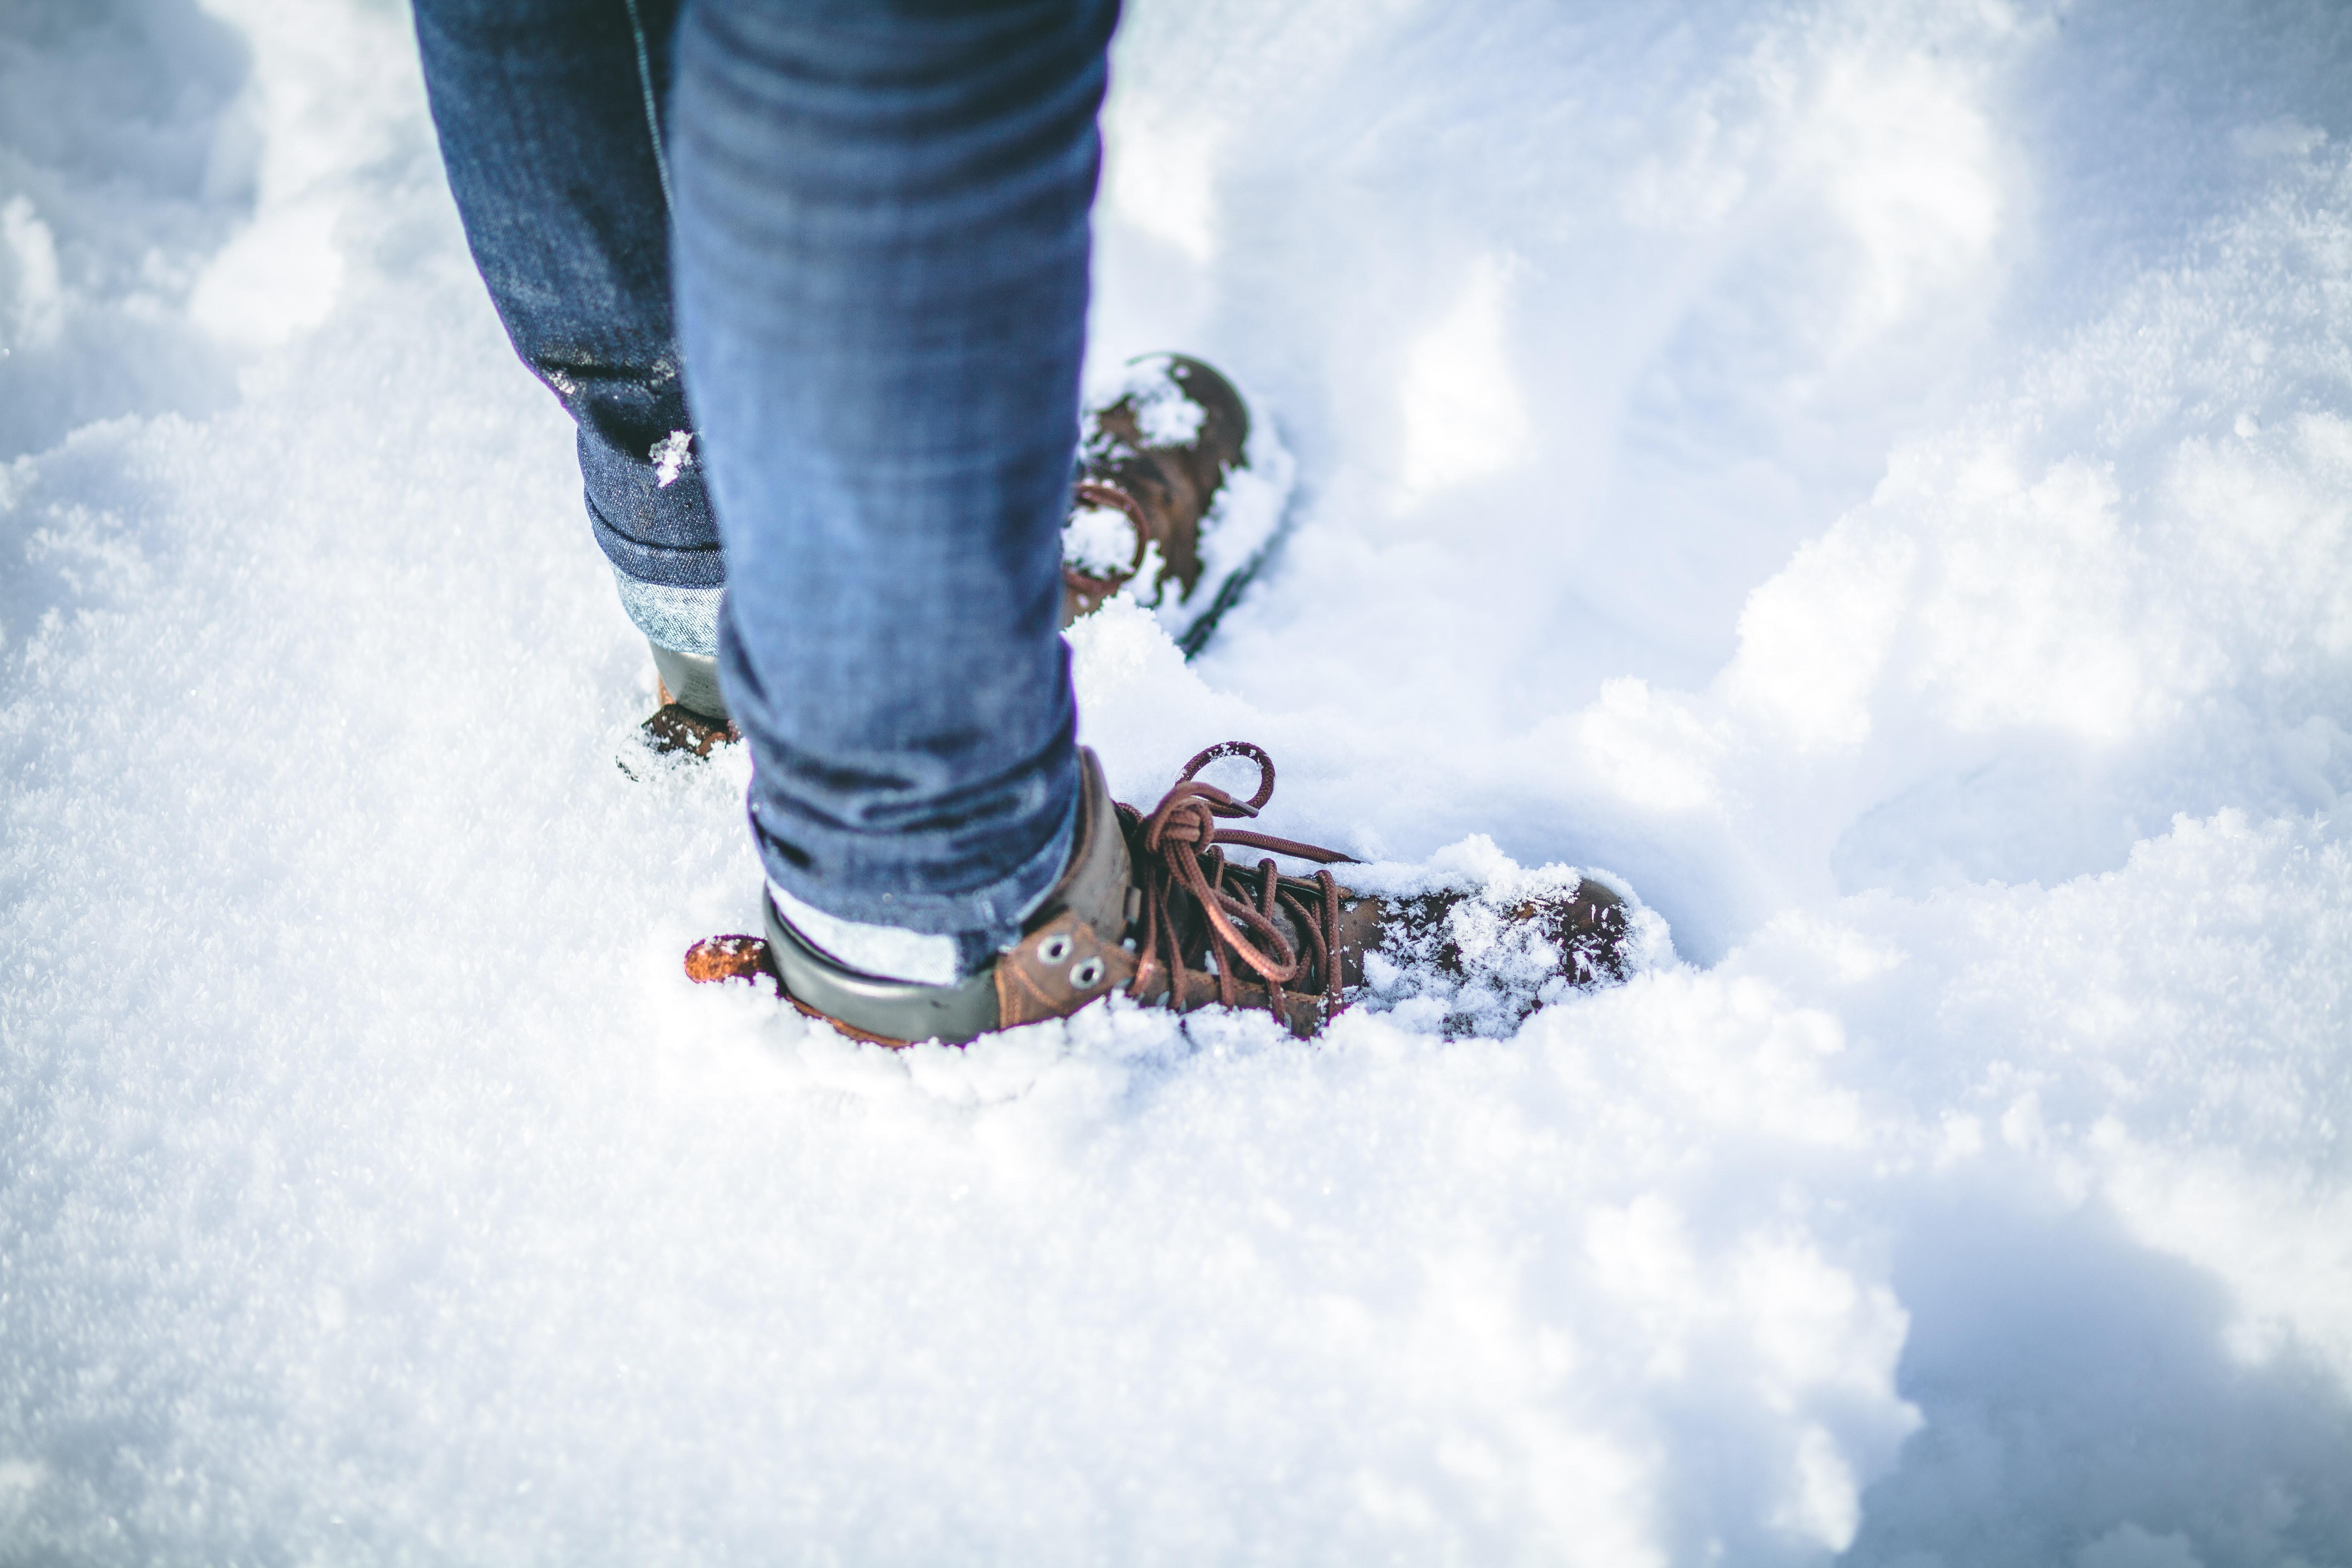 Как ухаживать за кожаной обувью зимой